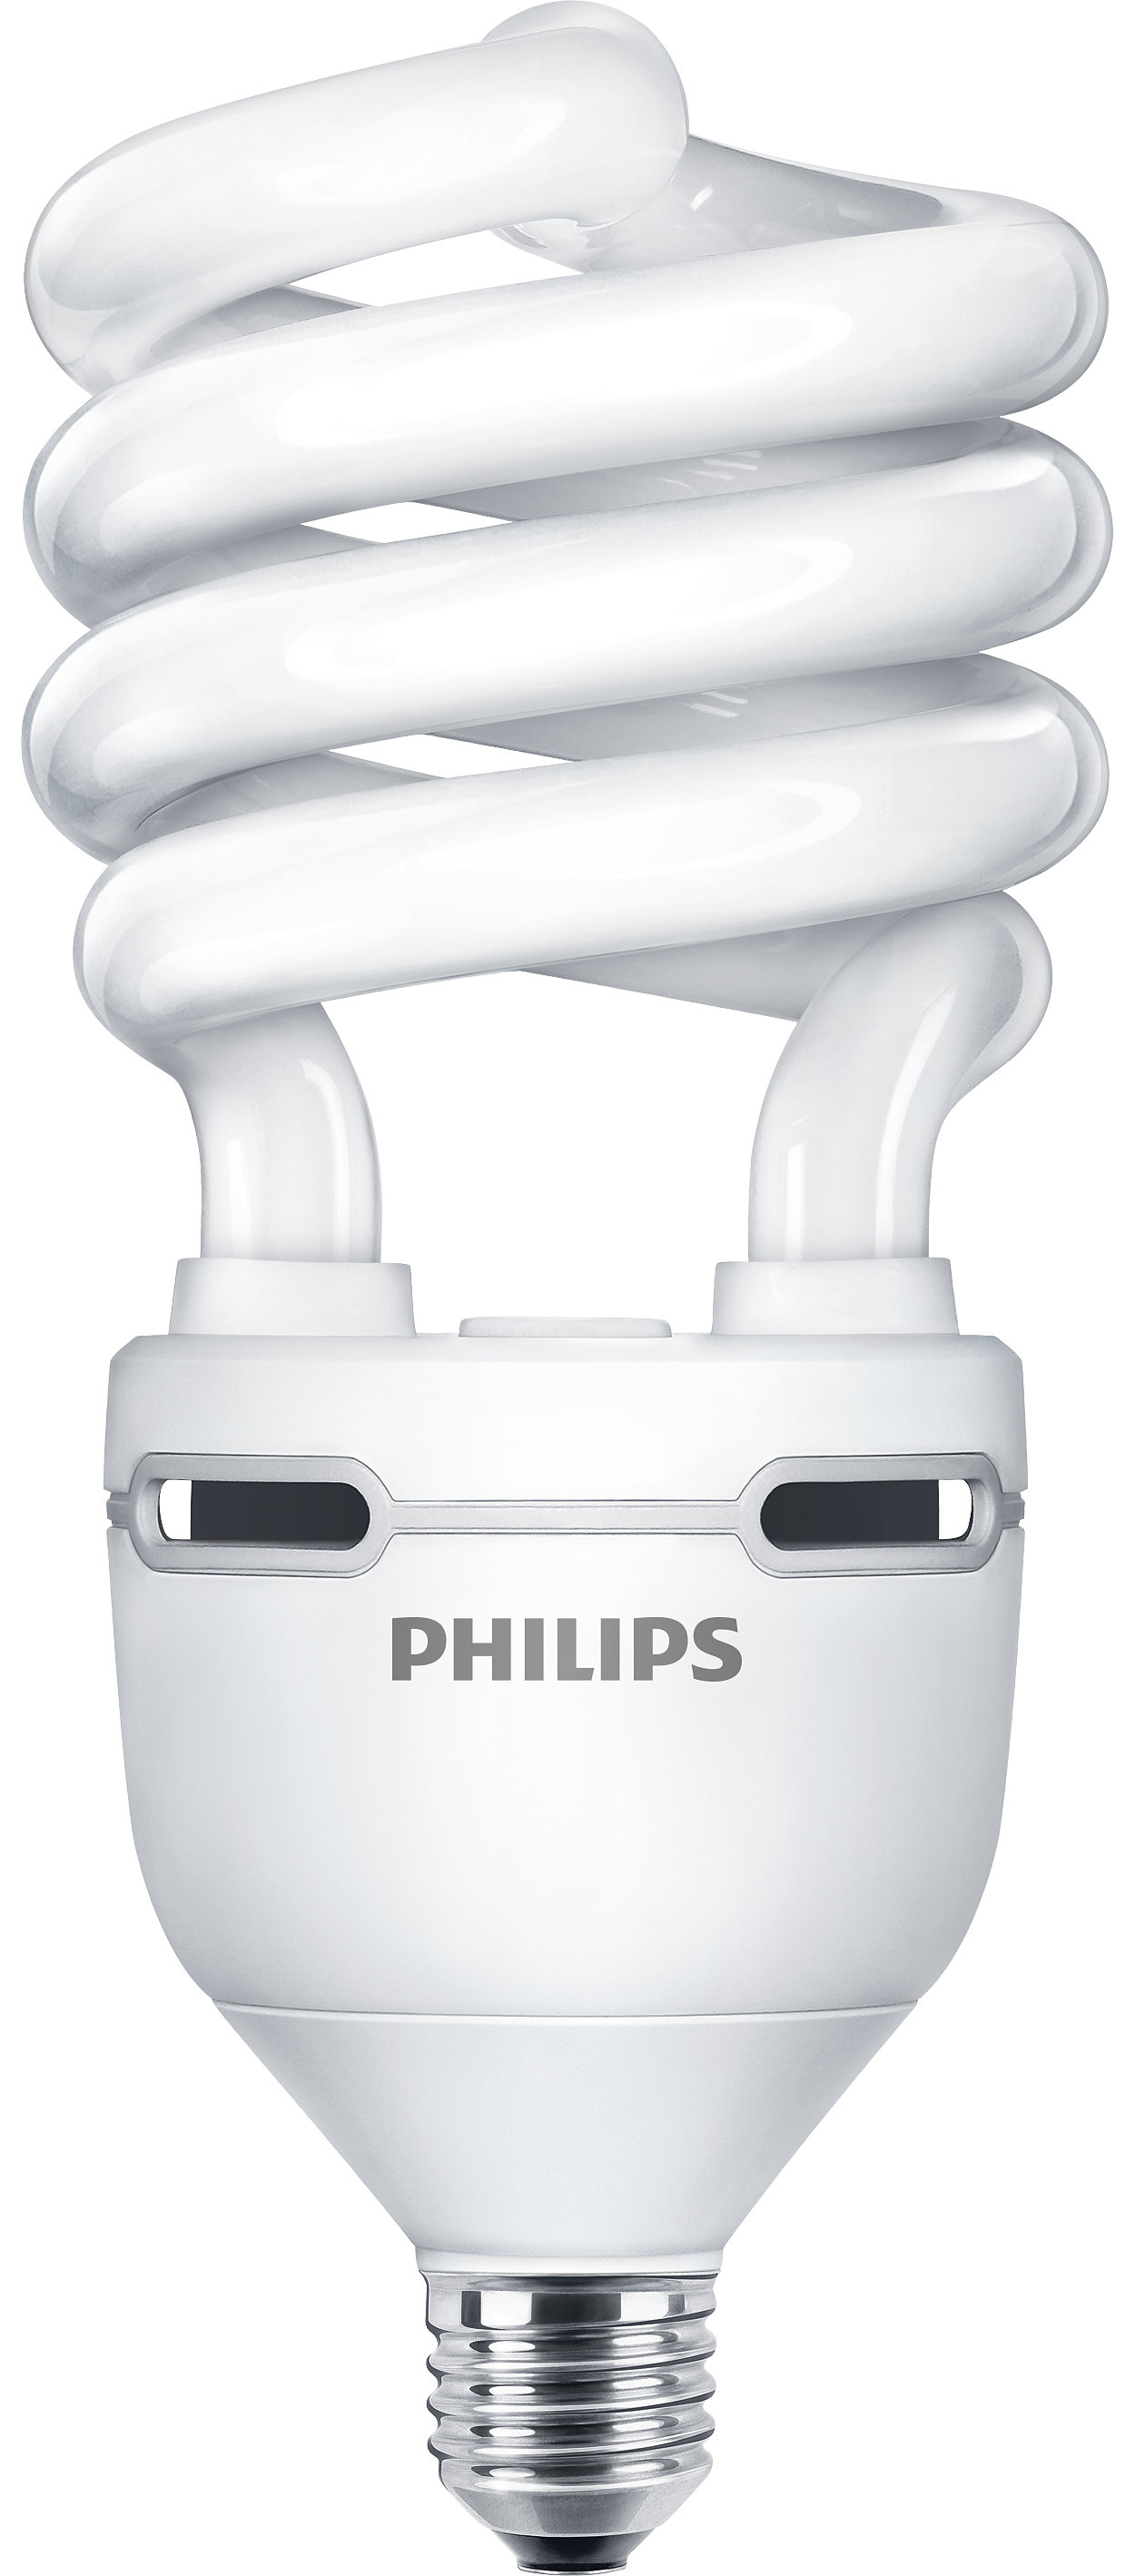 Энергосберегающая лампа с витой колбой и максимальной светоотдачей.